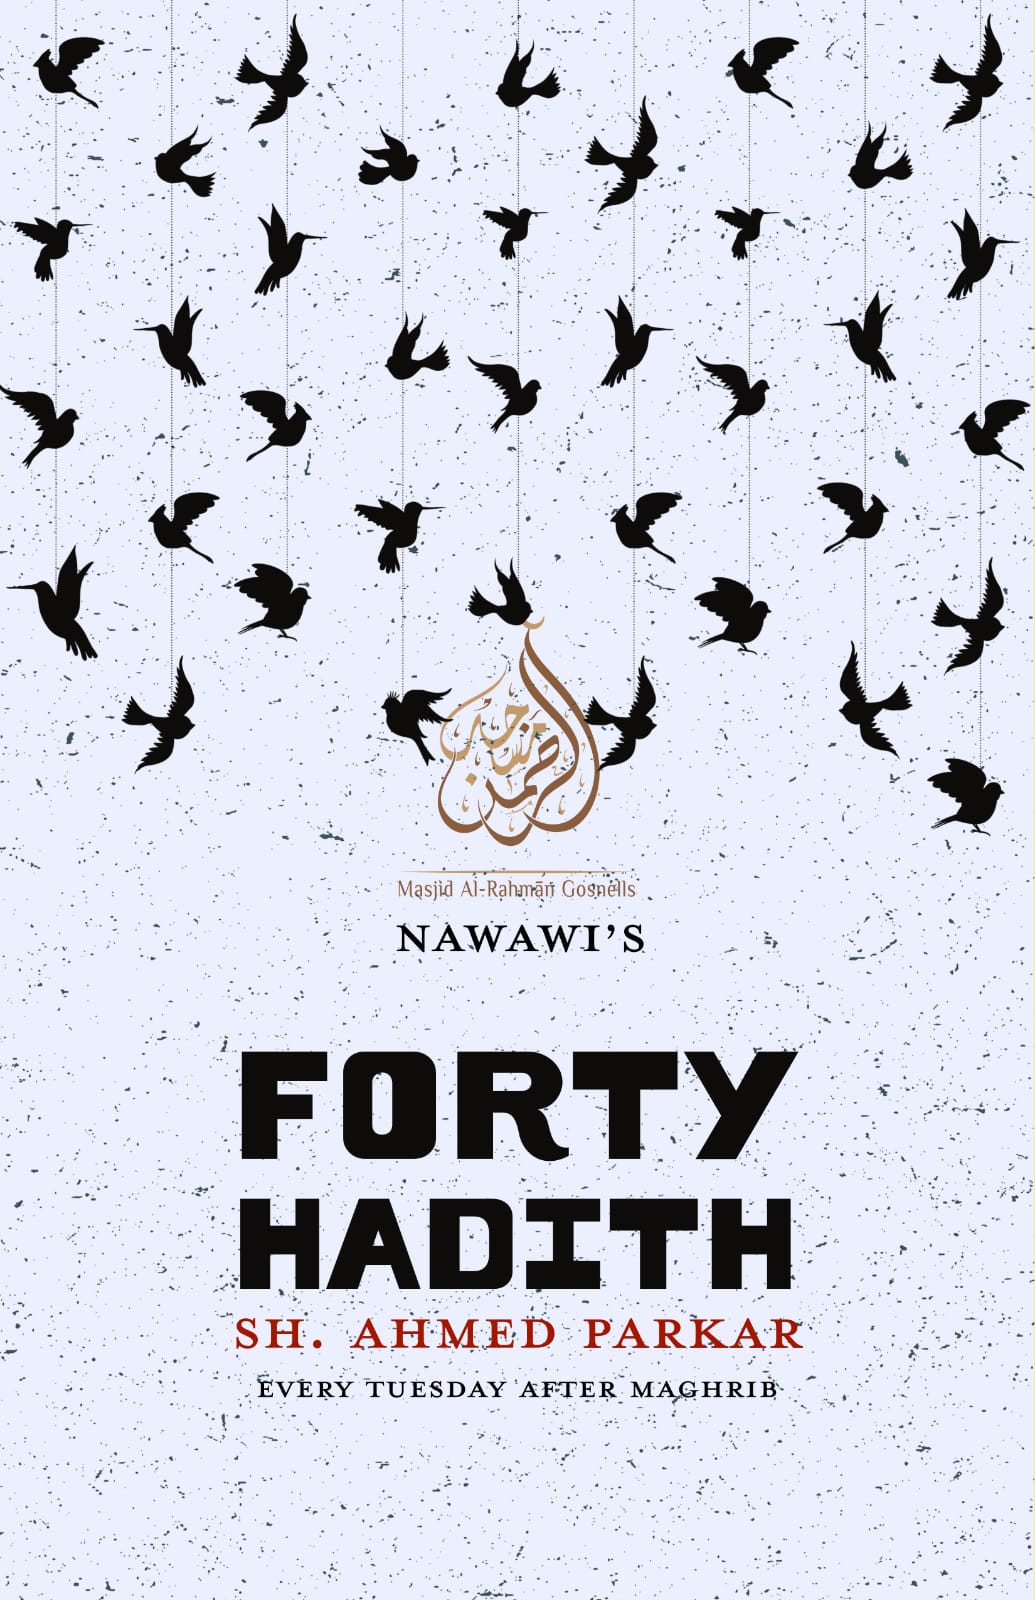 Forty Hadith